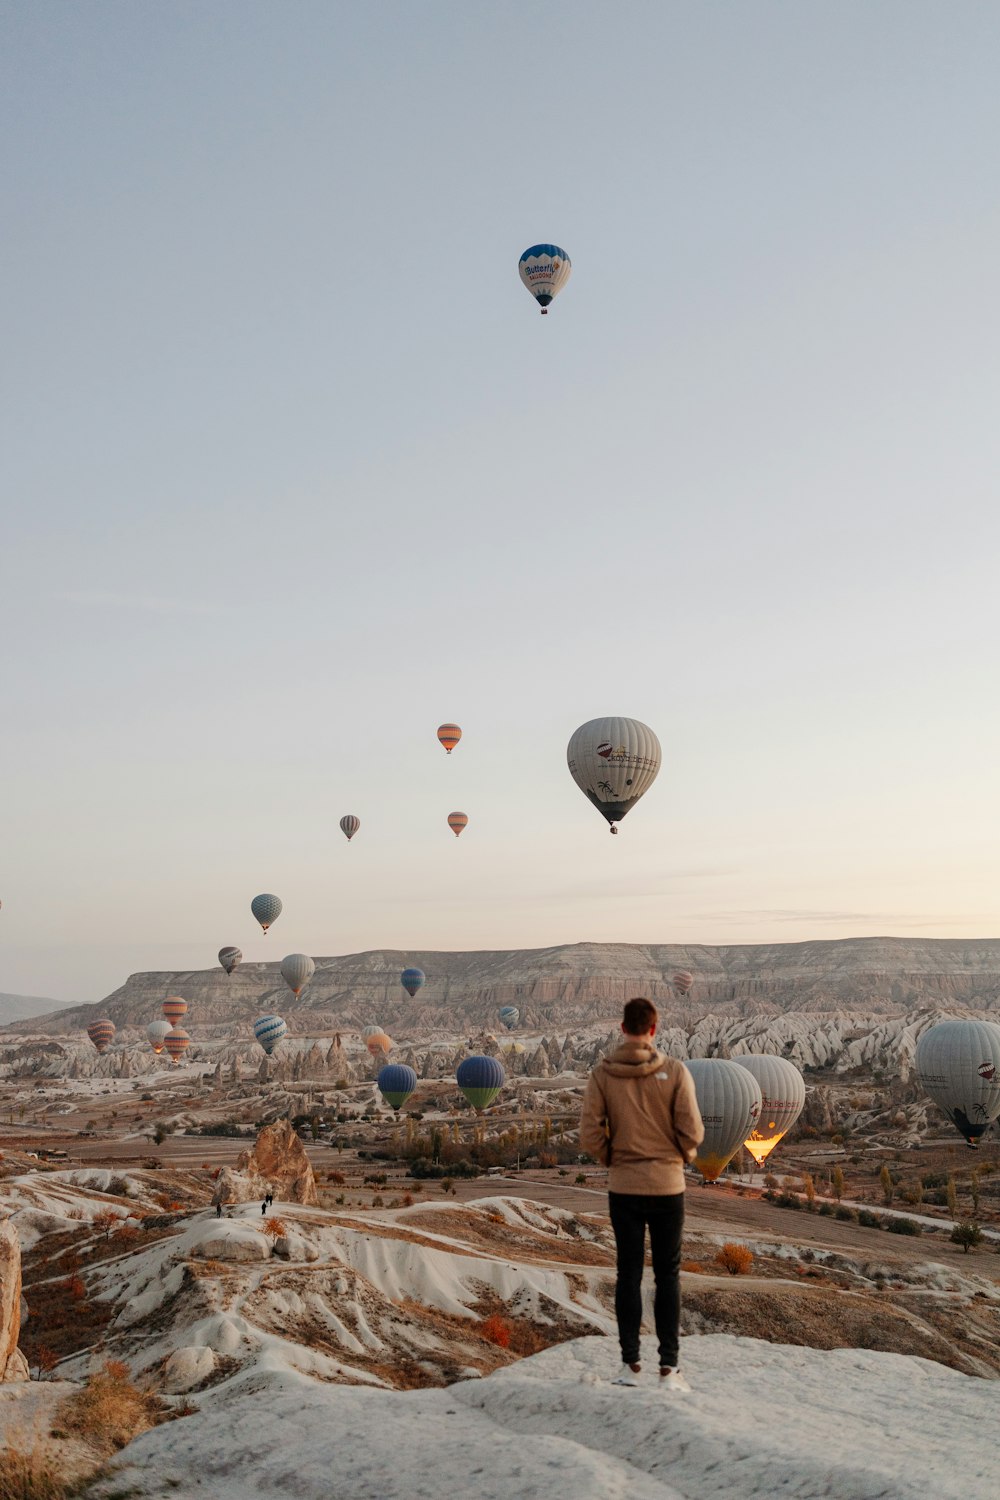 Una persona parada en una colina con globos aerostáticos en el aire